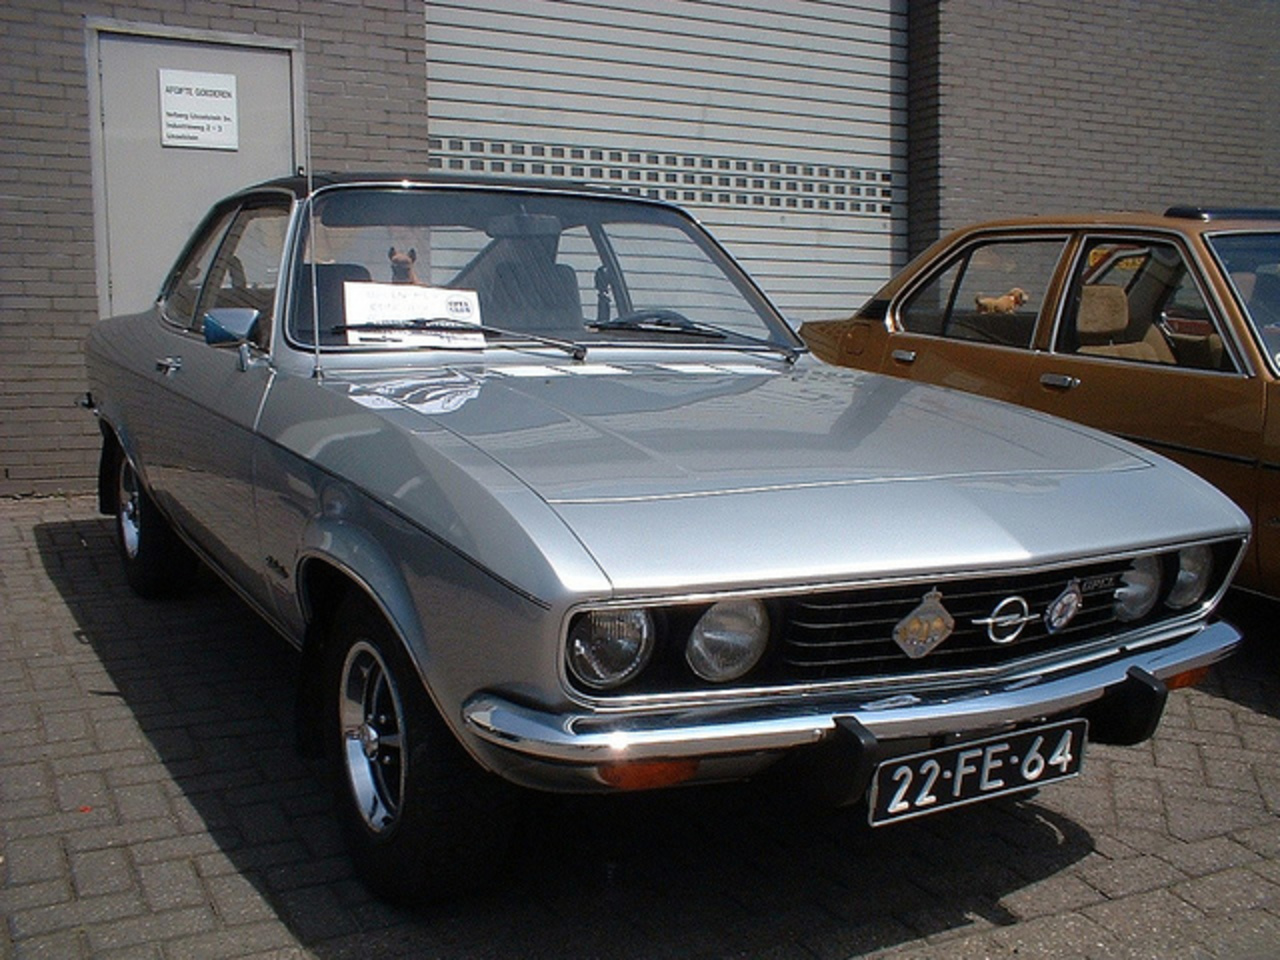 22-FE-64 Opel Manta Automatic [1975]. Met dank aan Historische Opel Club